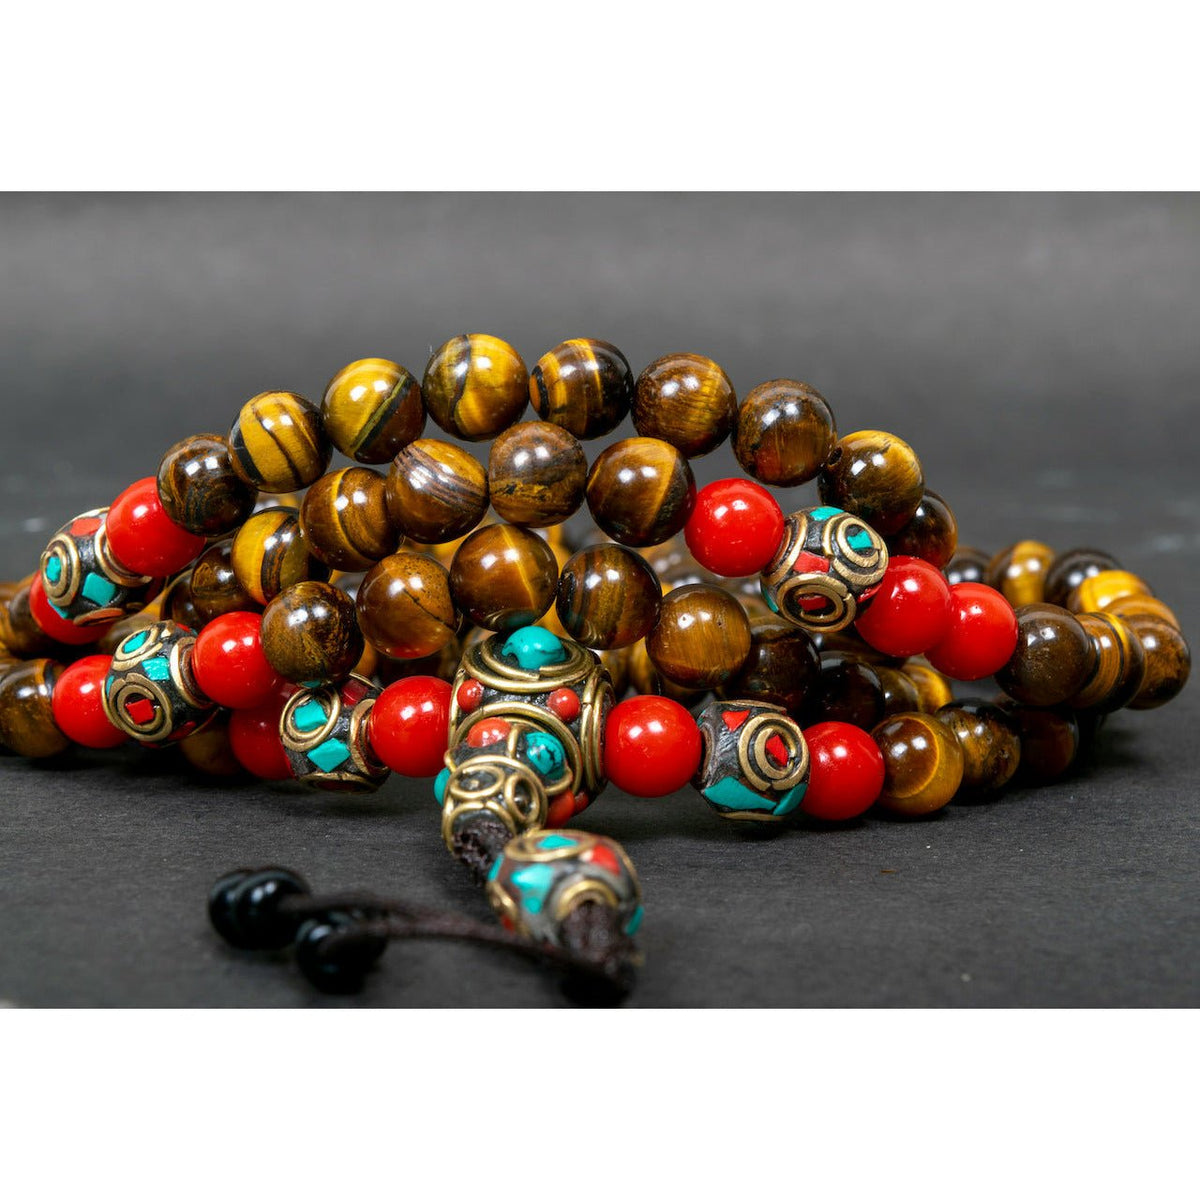 Tiger Eye Mala Beads  Its Benefits, How to Buy Online– Art Of Tibet